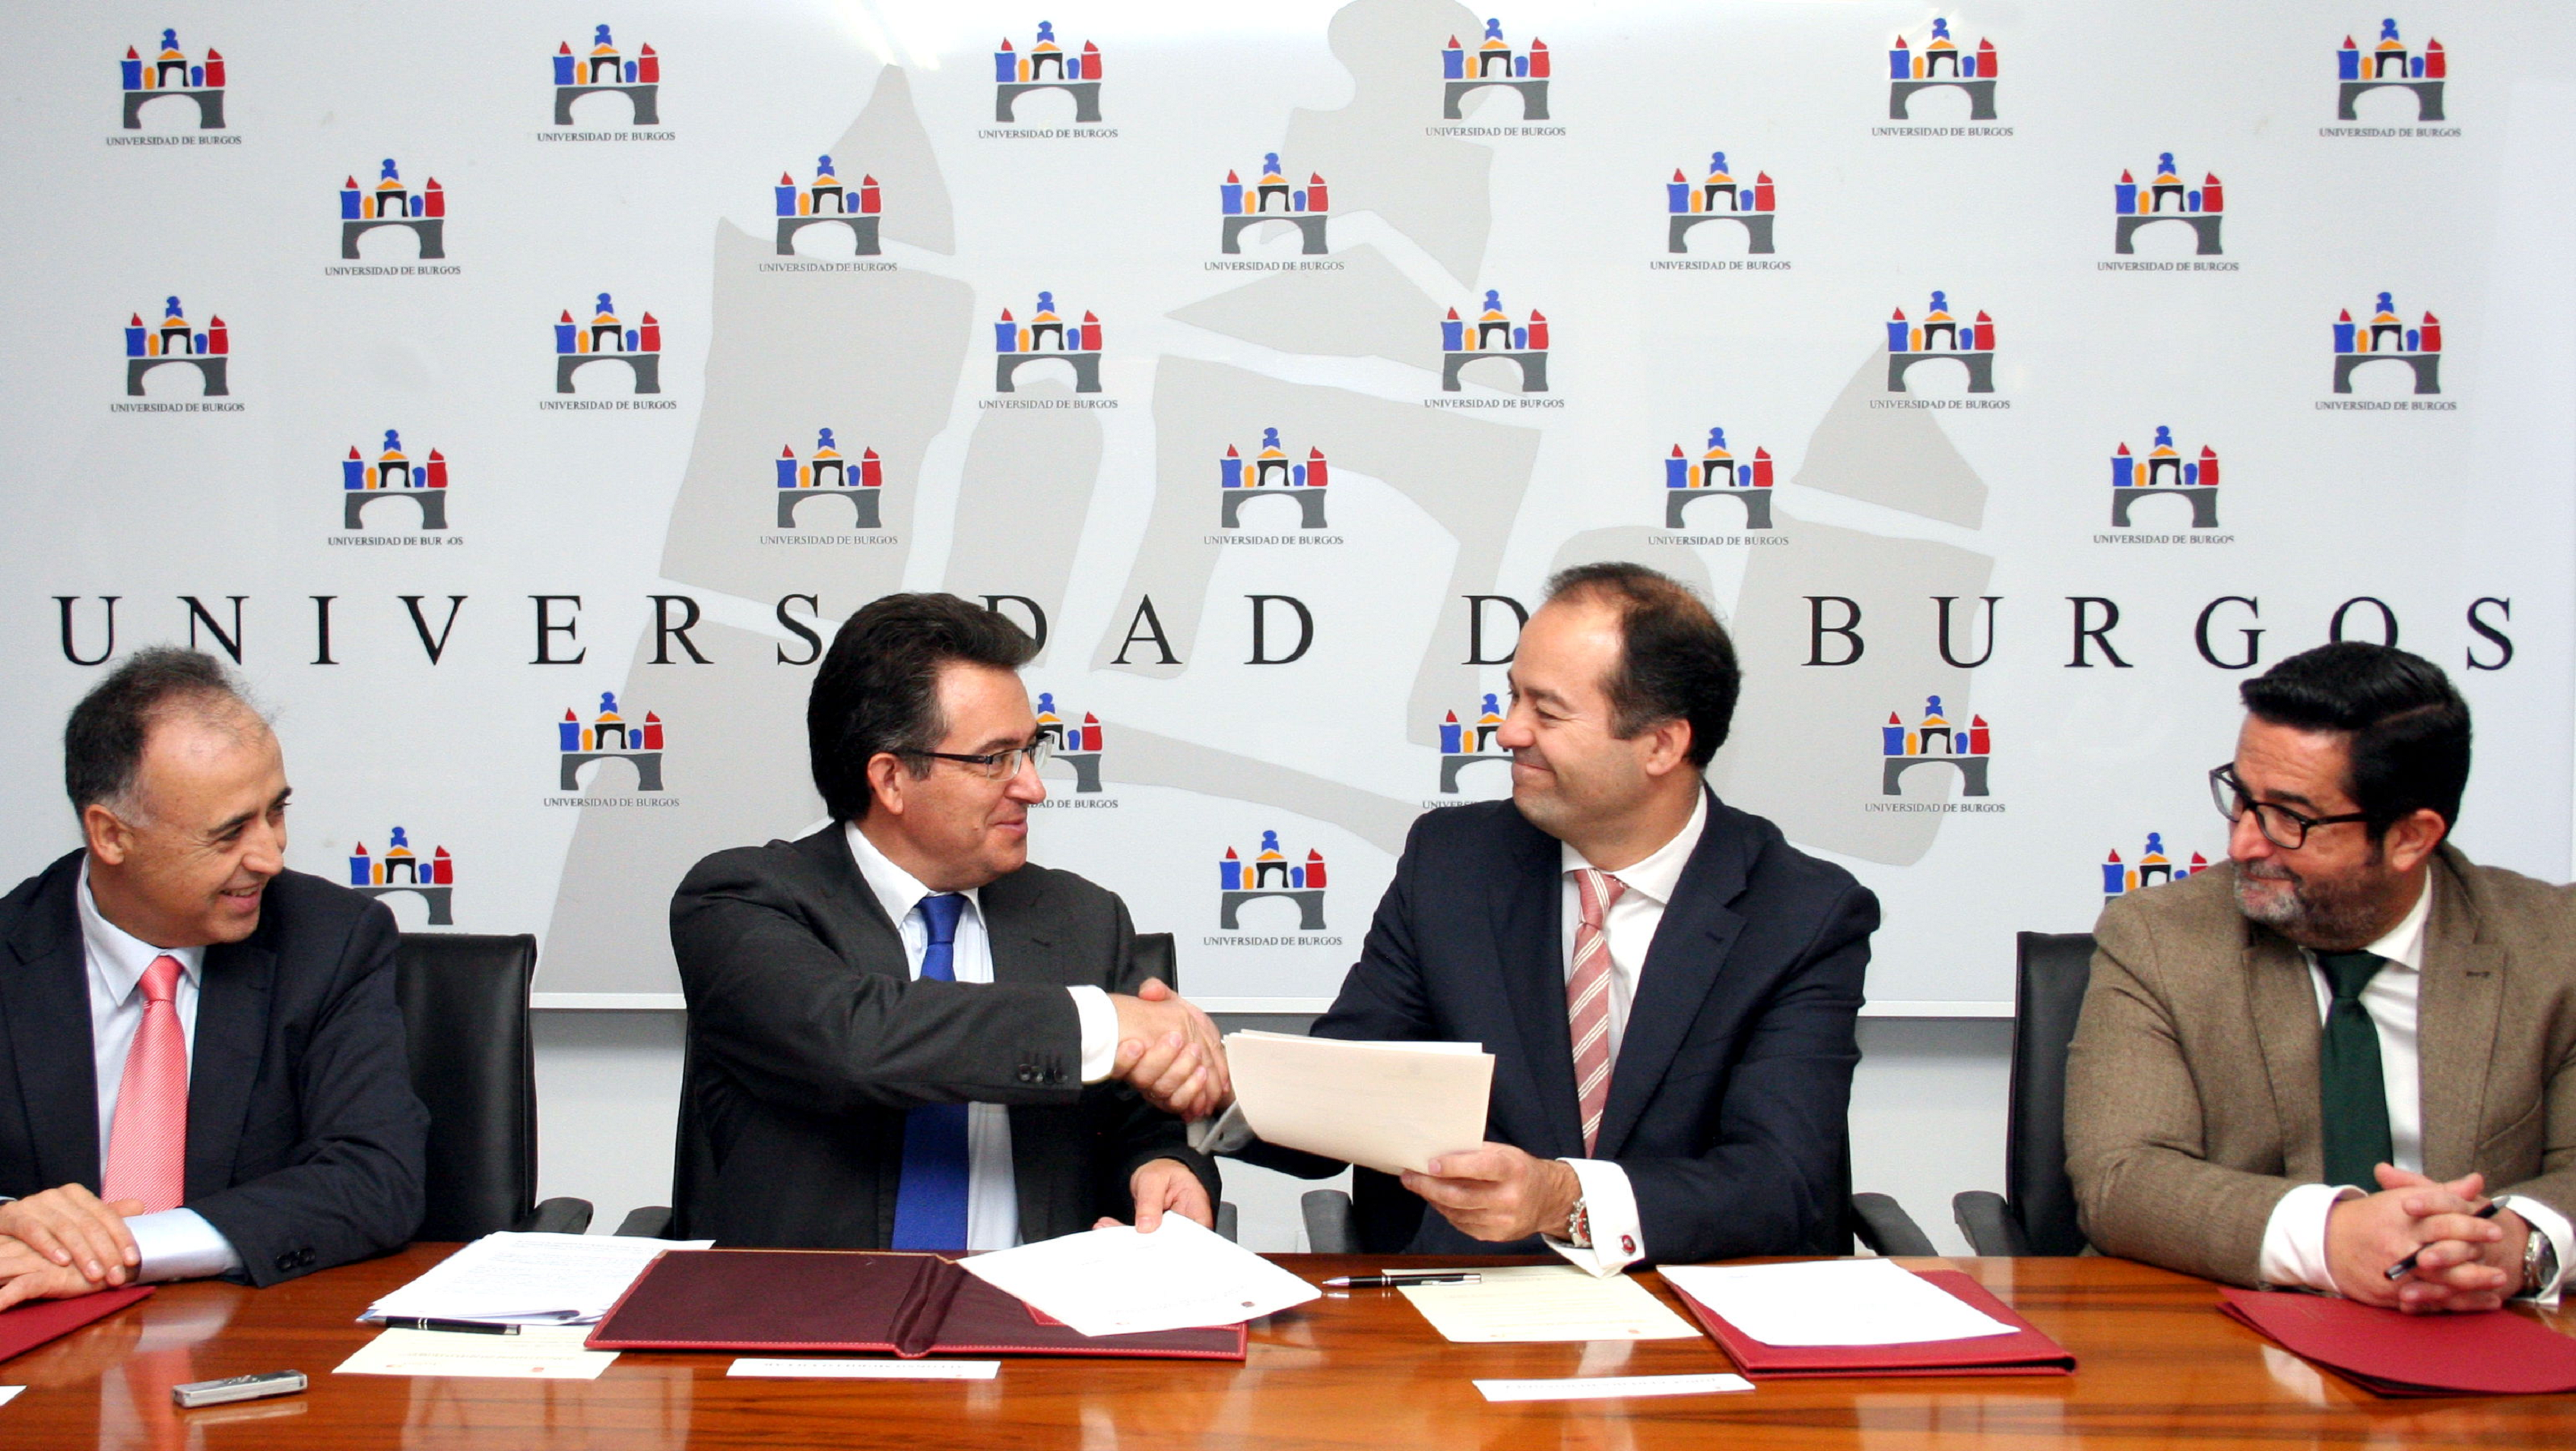 El rector de la Universidad de Burgos (segundo por la izquierda) sella el acuerdo con el director general de Keyland. Fuente: UBU.